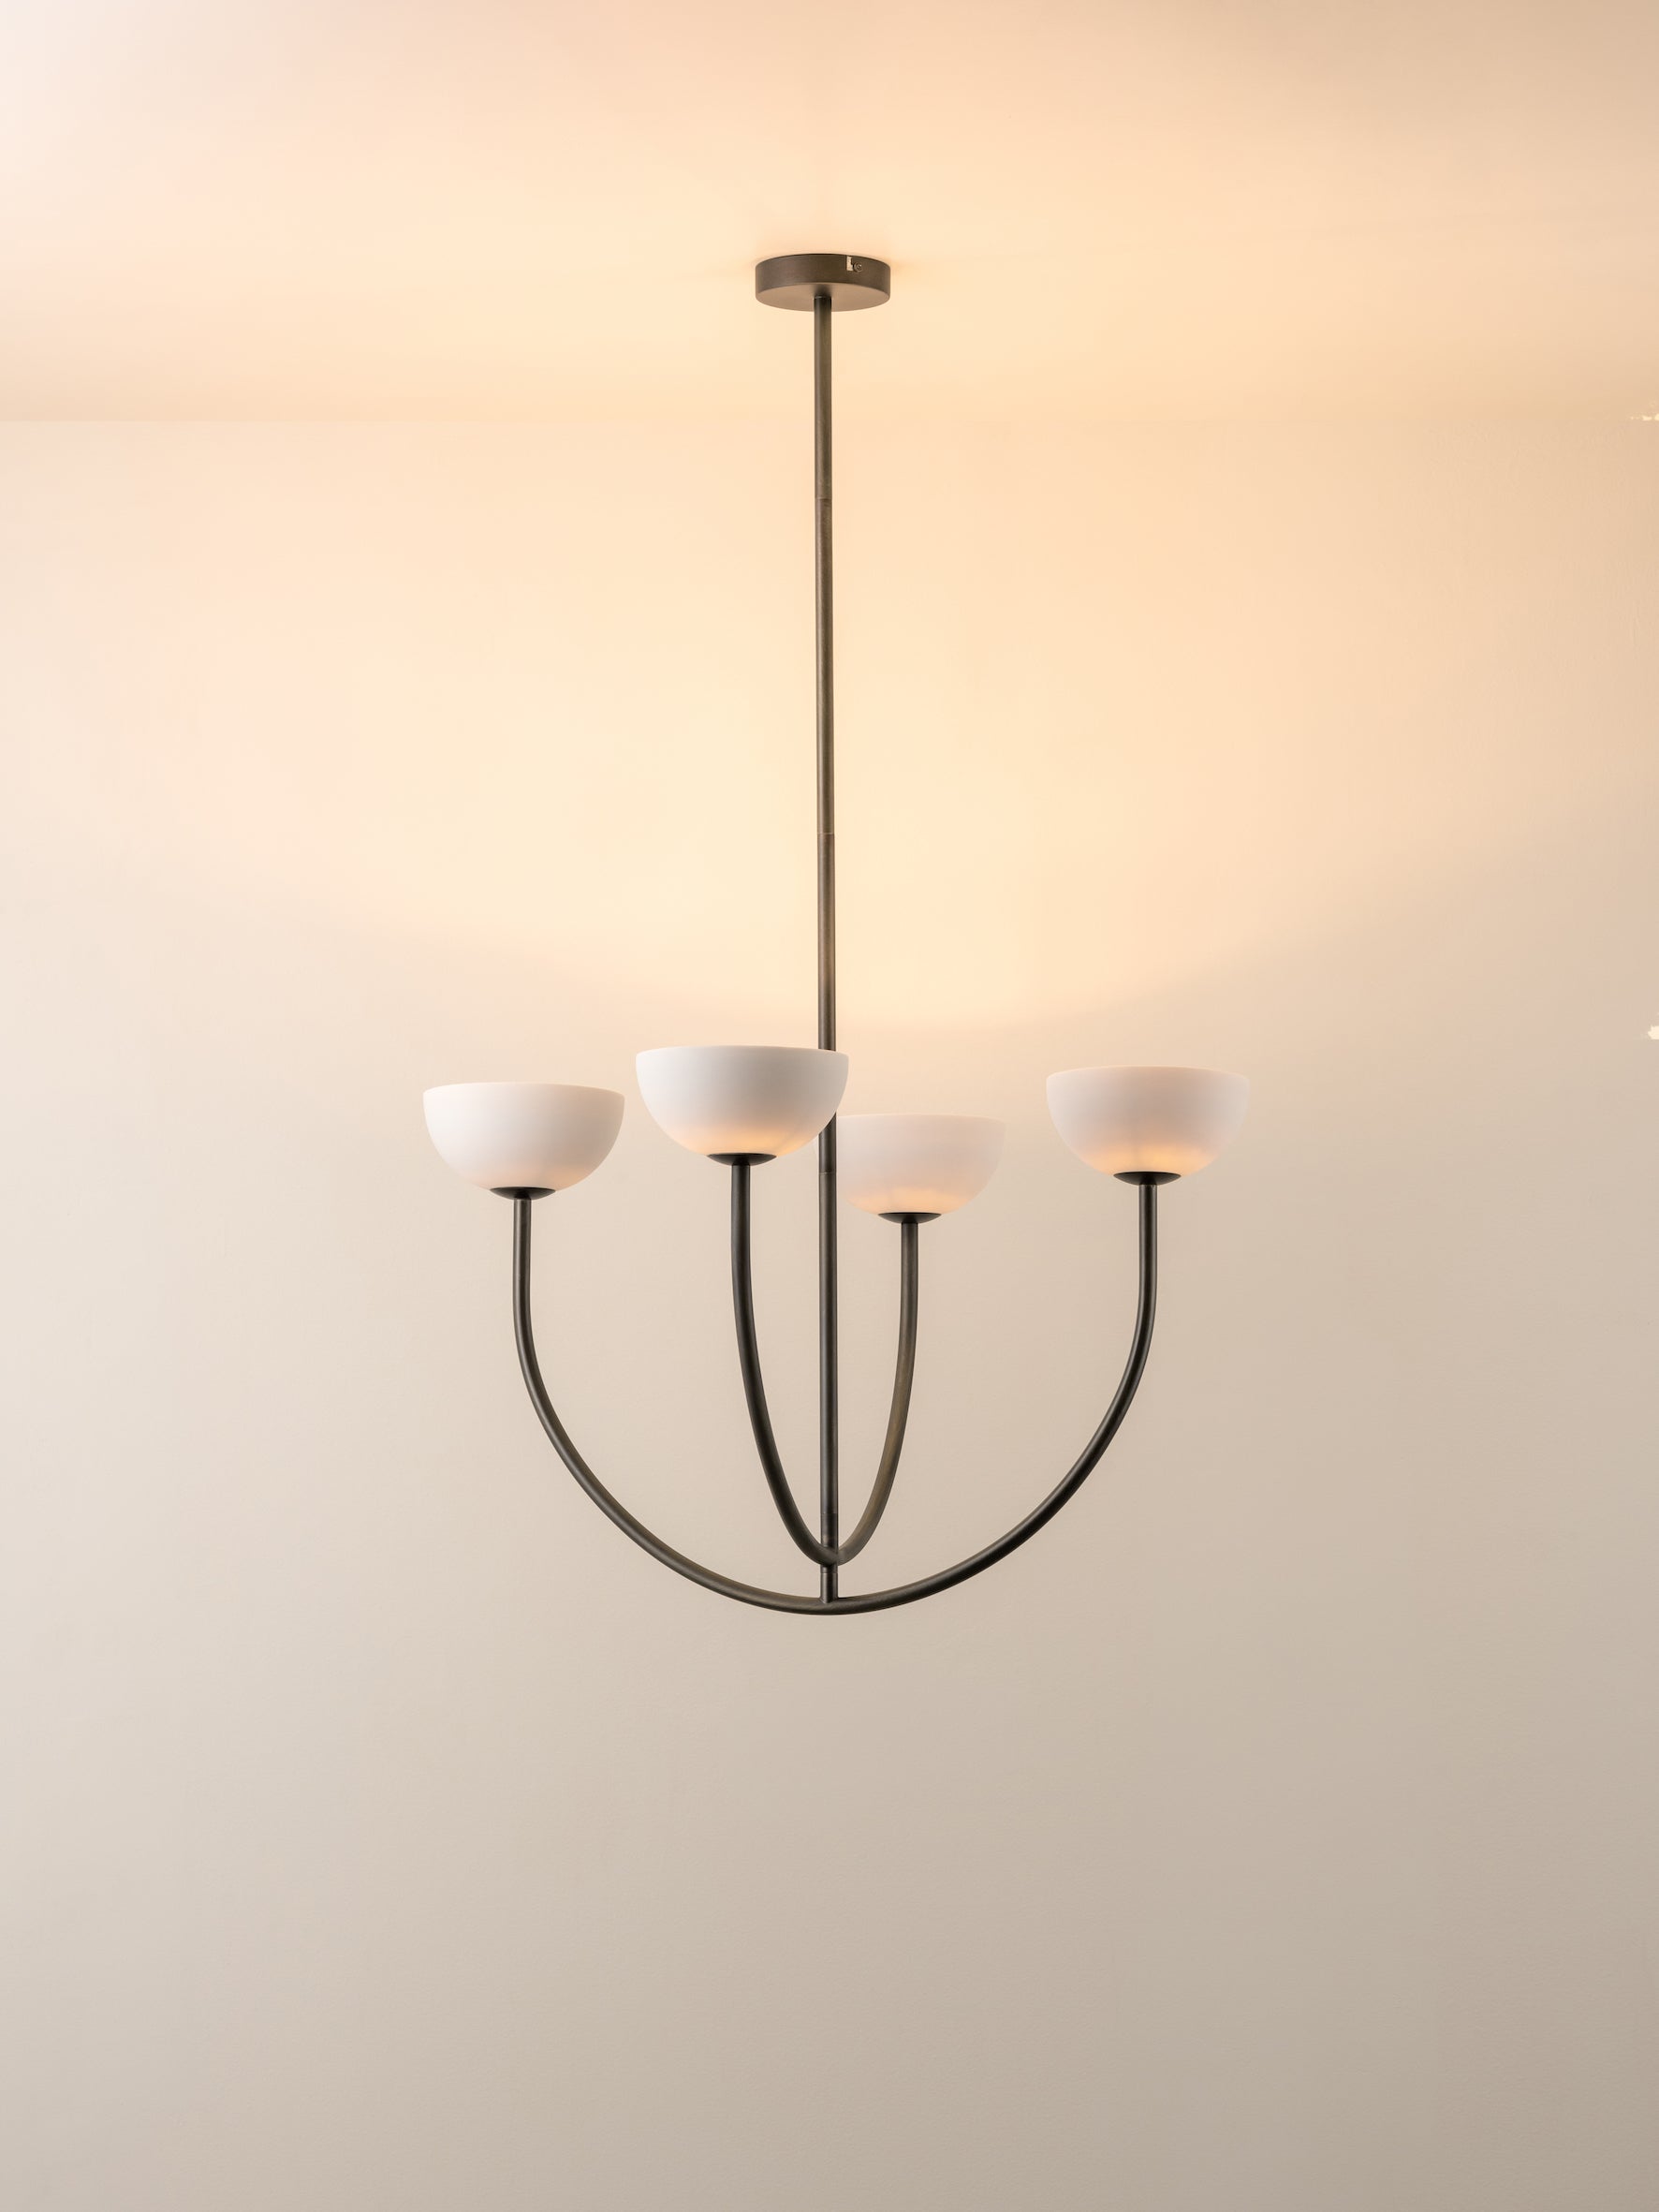 Ruzo - 4 light bronze and porcelain pendant | Ceiling Light | Lights & Lamps | UK | Modern Affordable Designer Lighting